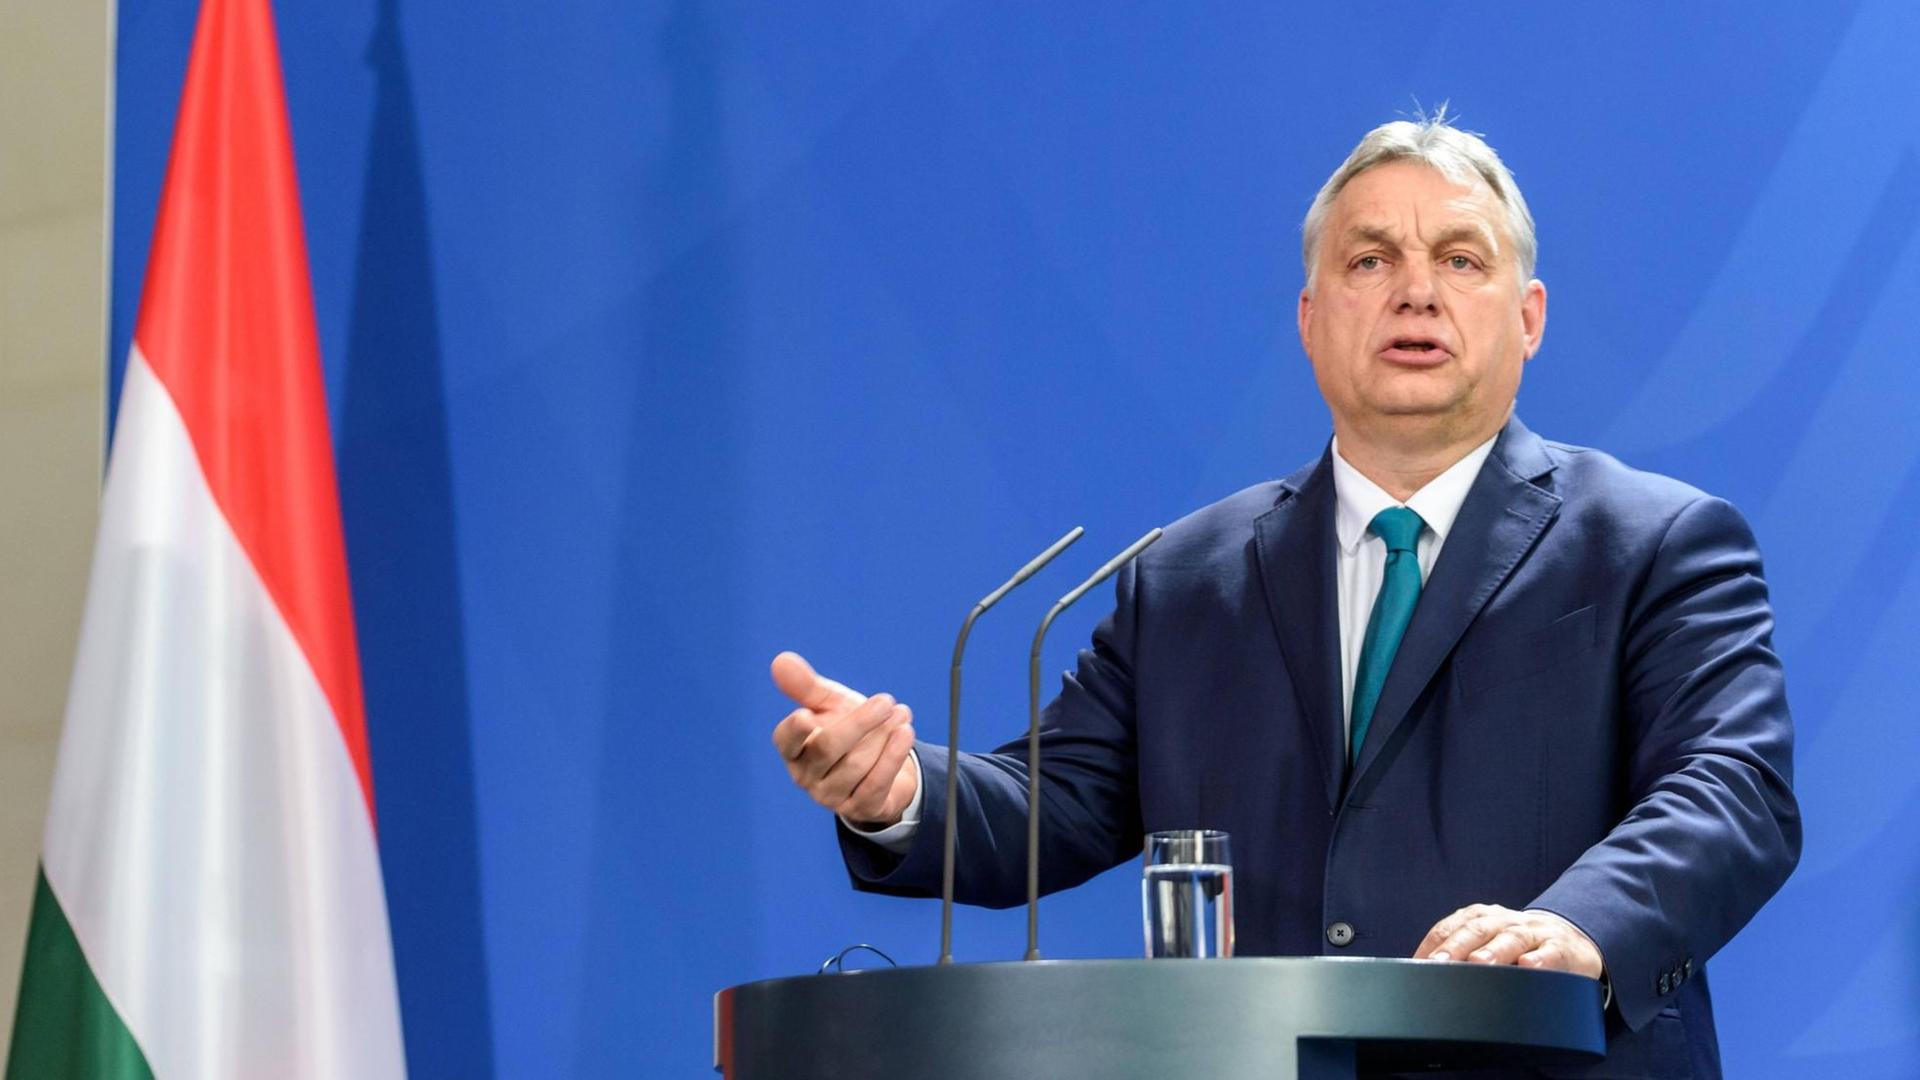 Viktor Orbán steht an einem Redner-Pult, neben ihm hängt die ungarische Flagge: rot-weiß-grün.